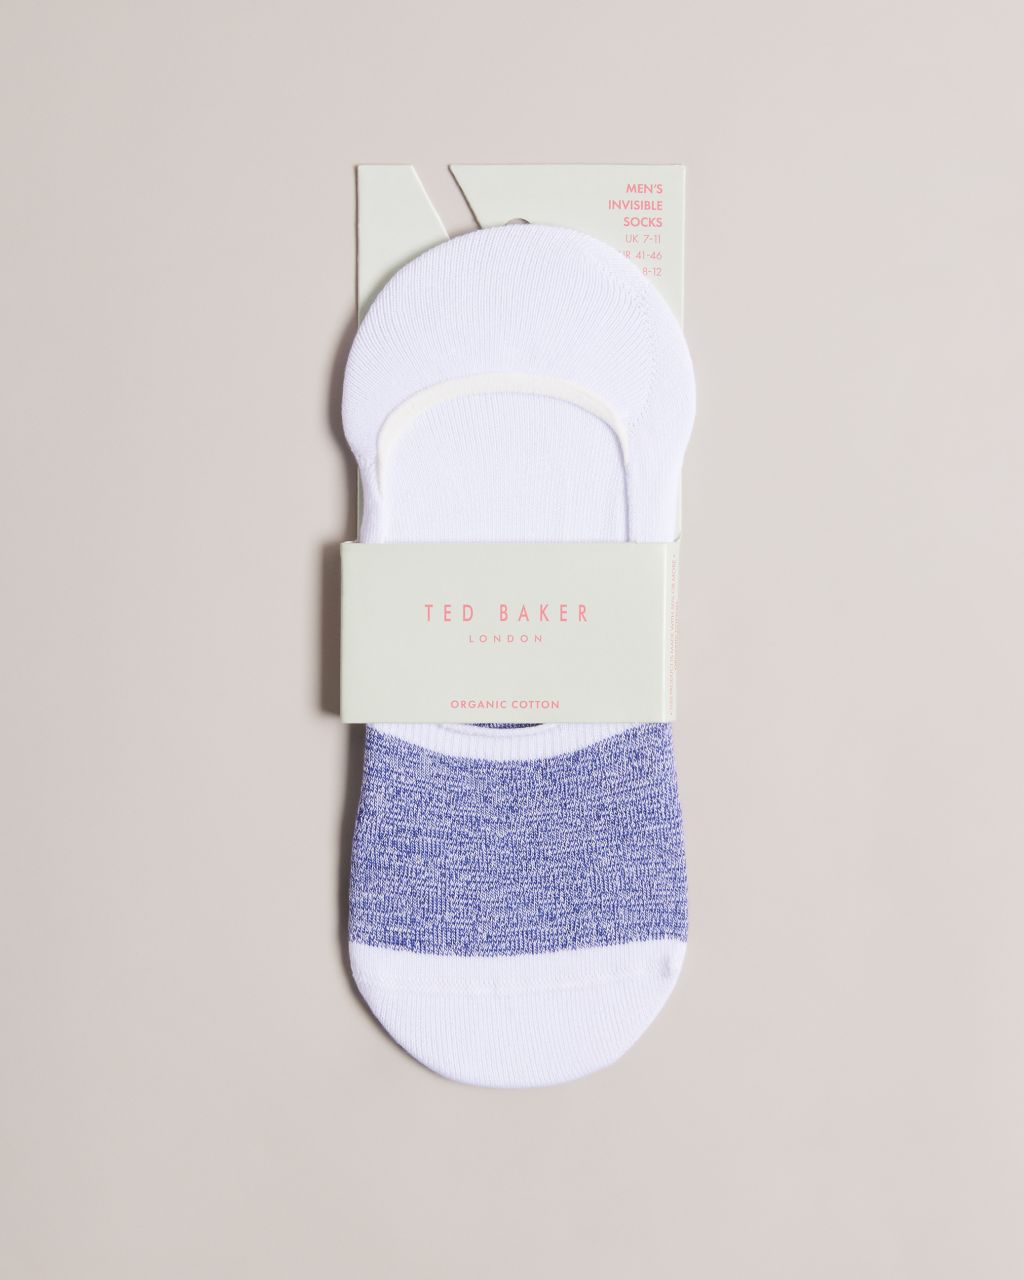 Men's Invisible Socks in White, Nosock product